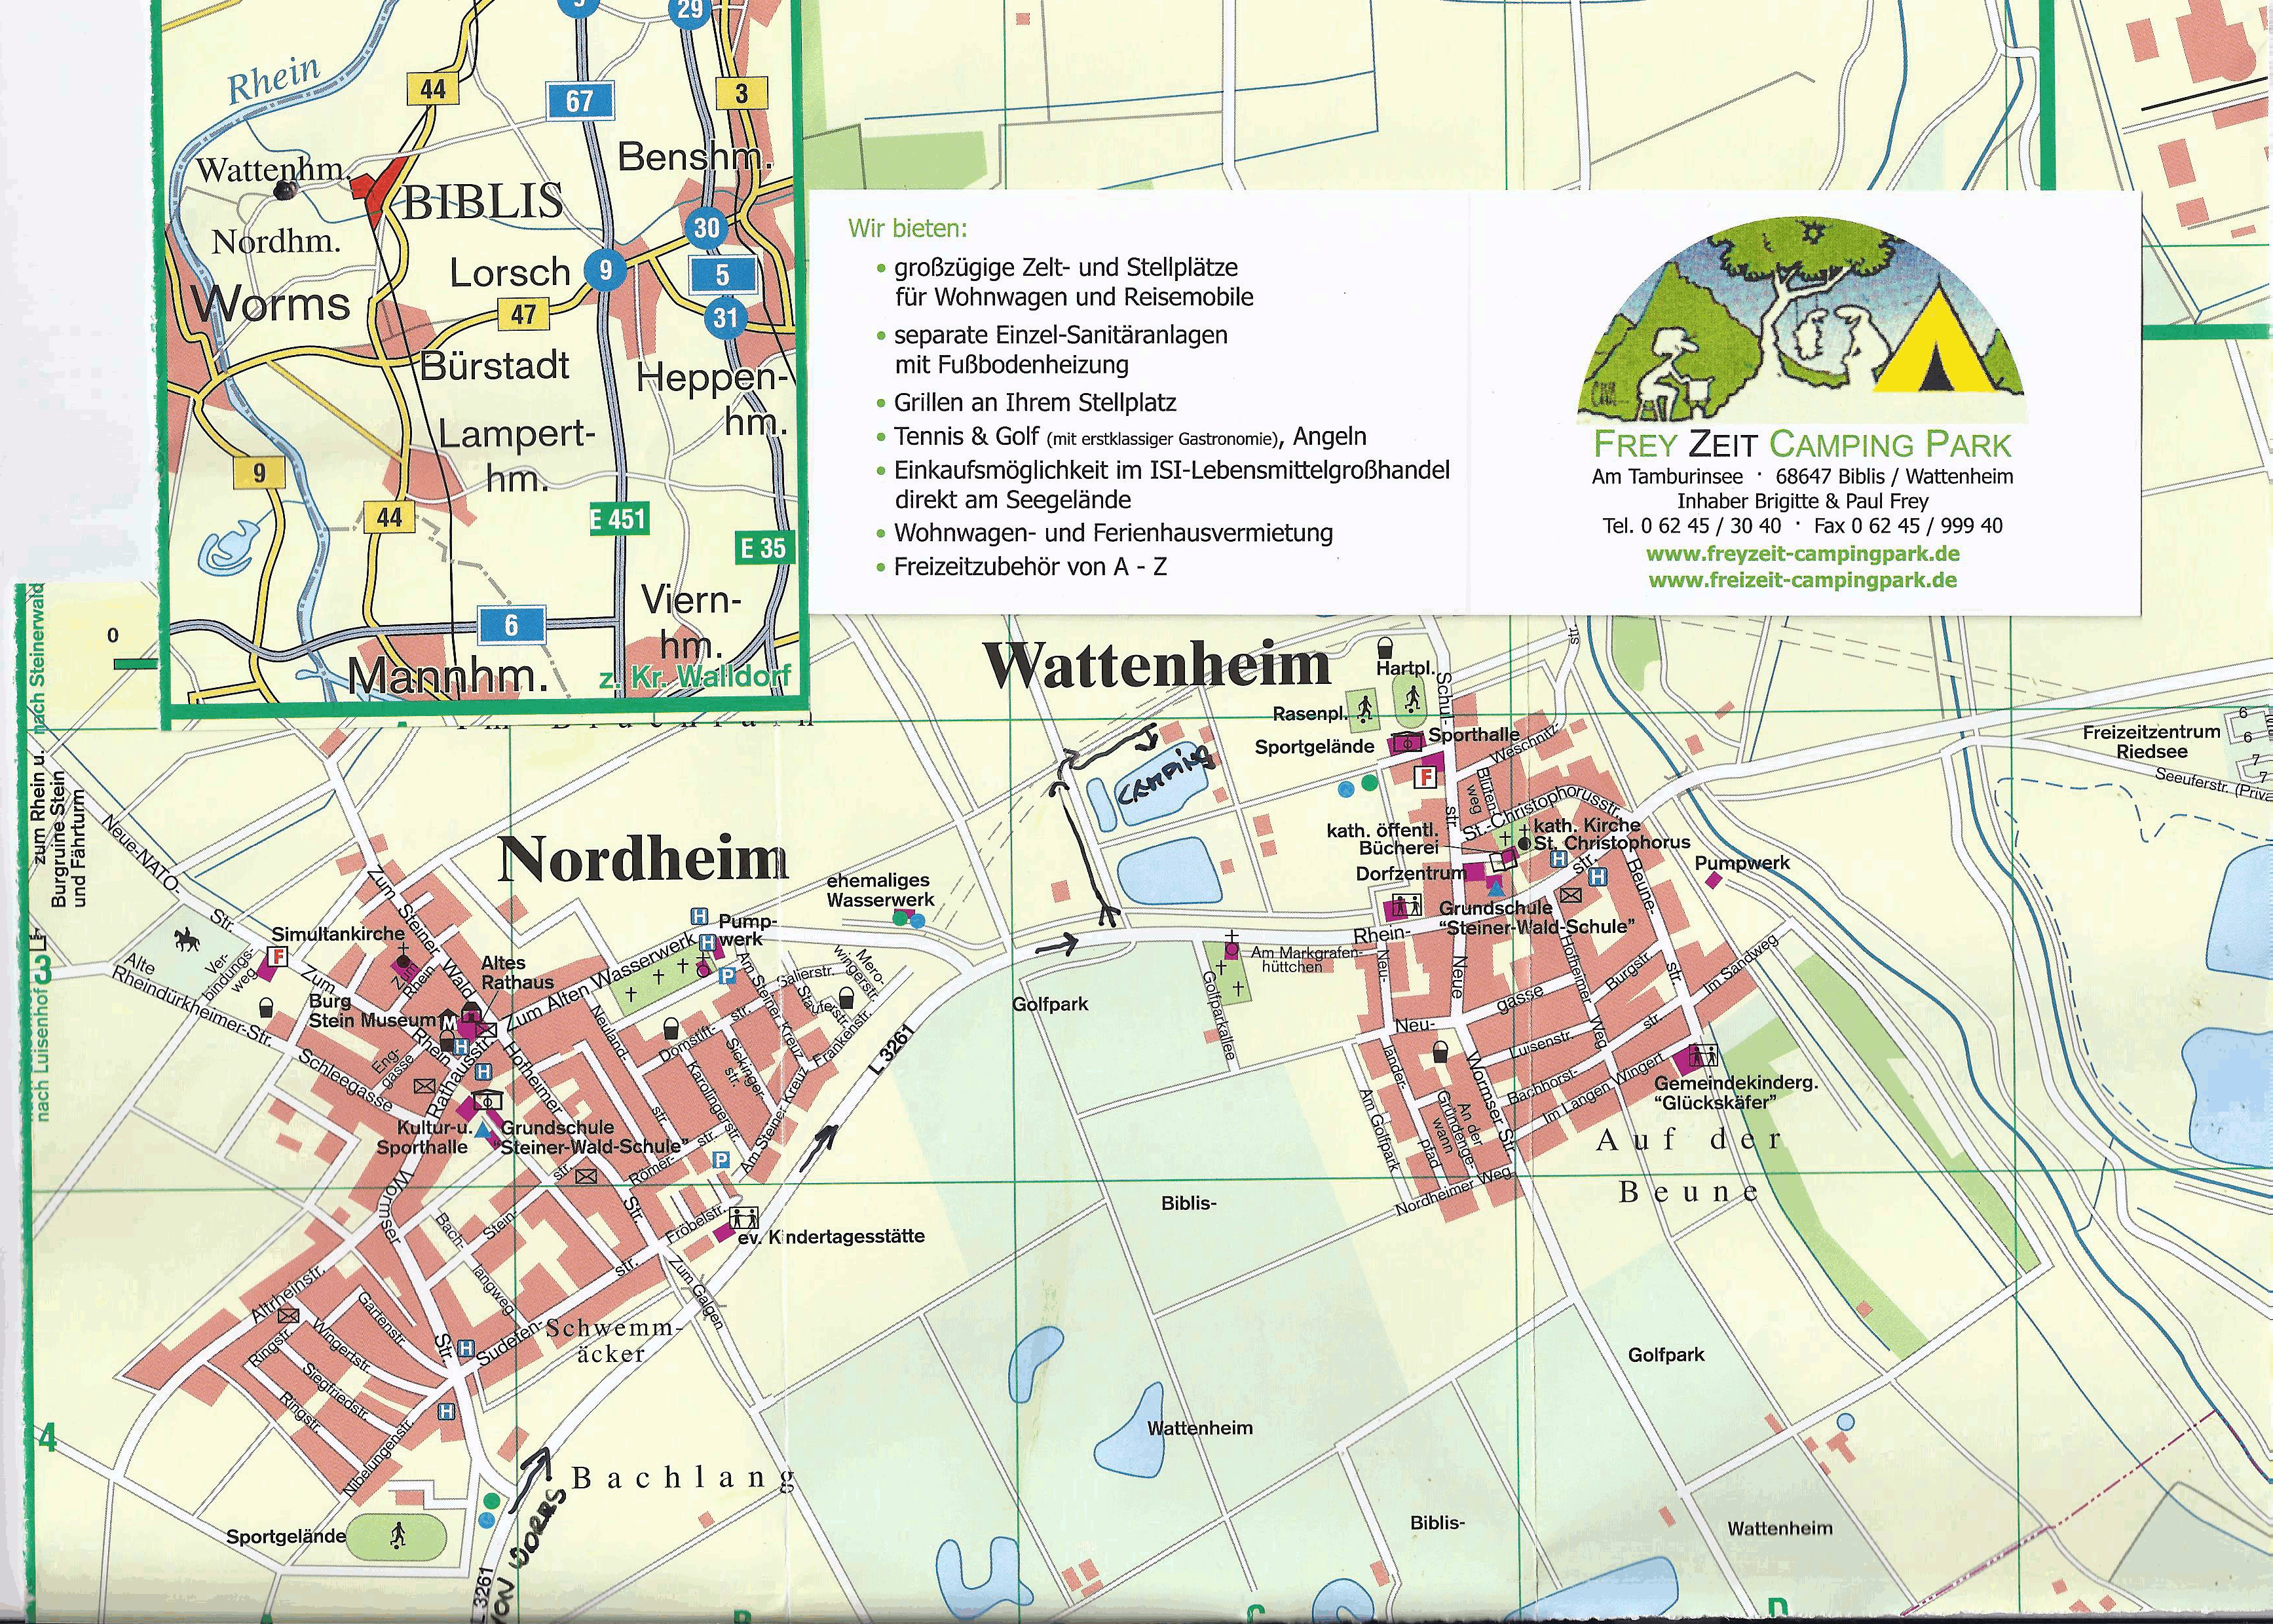 Karte rund um den Freyzeit Camping-Park